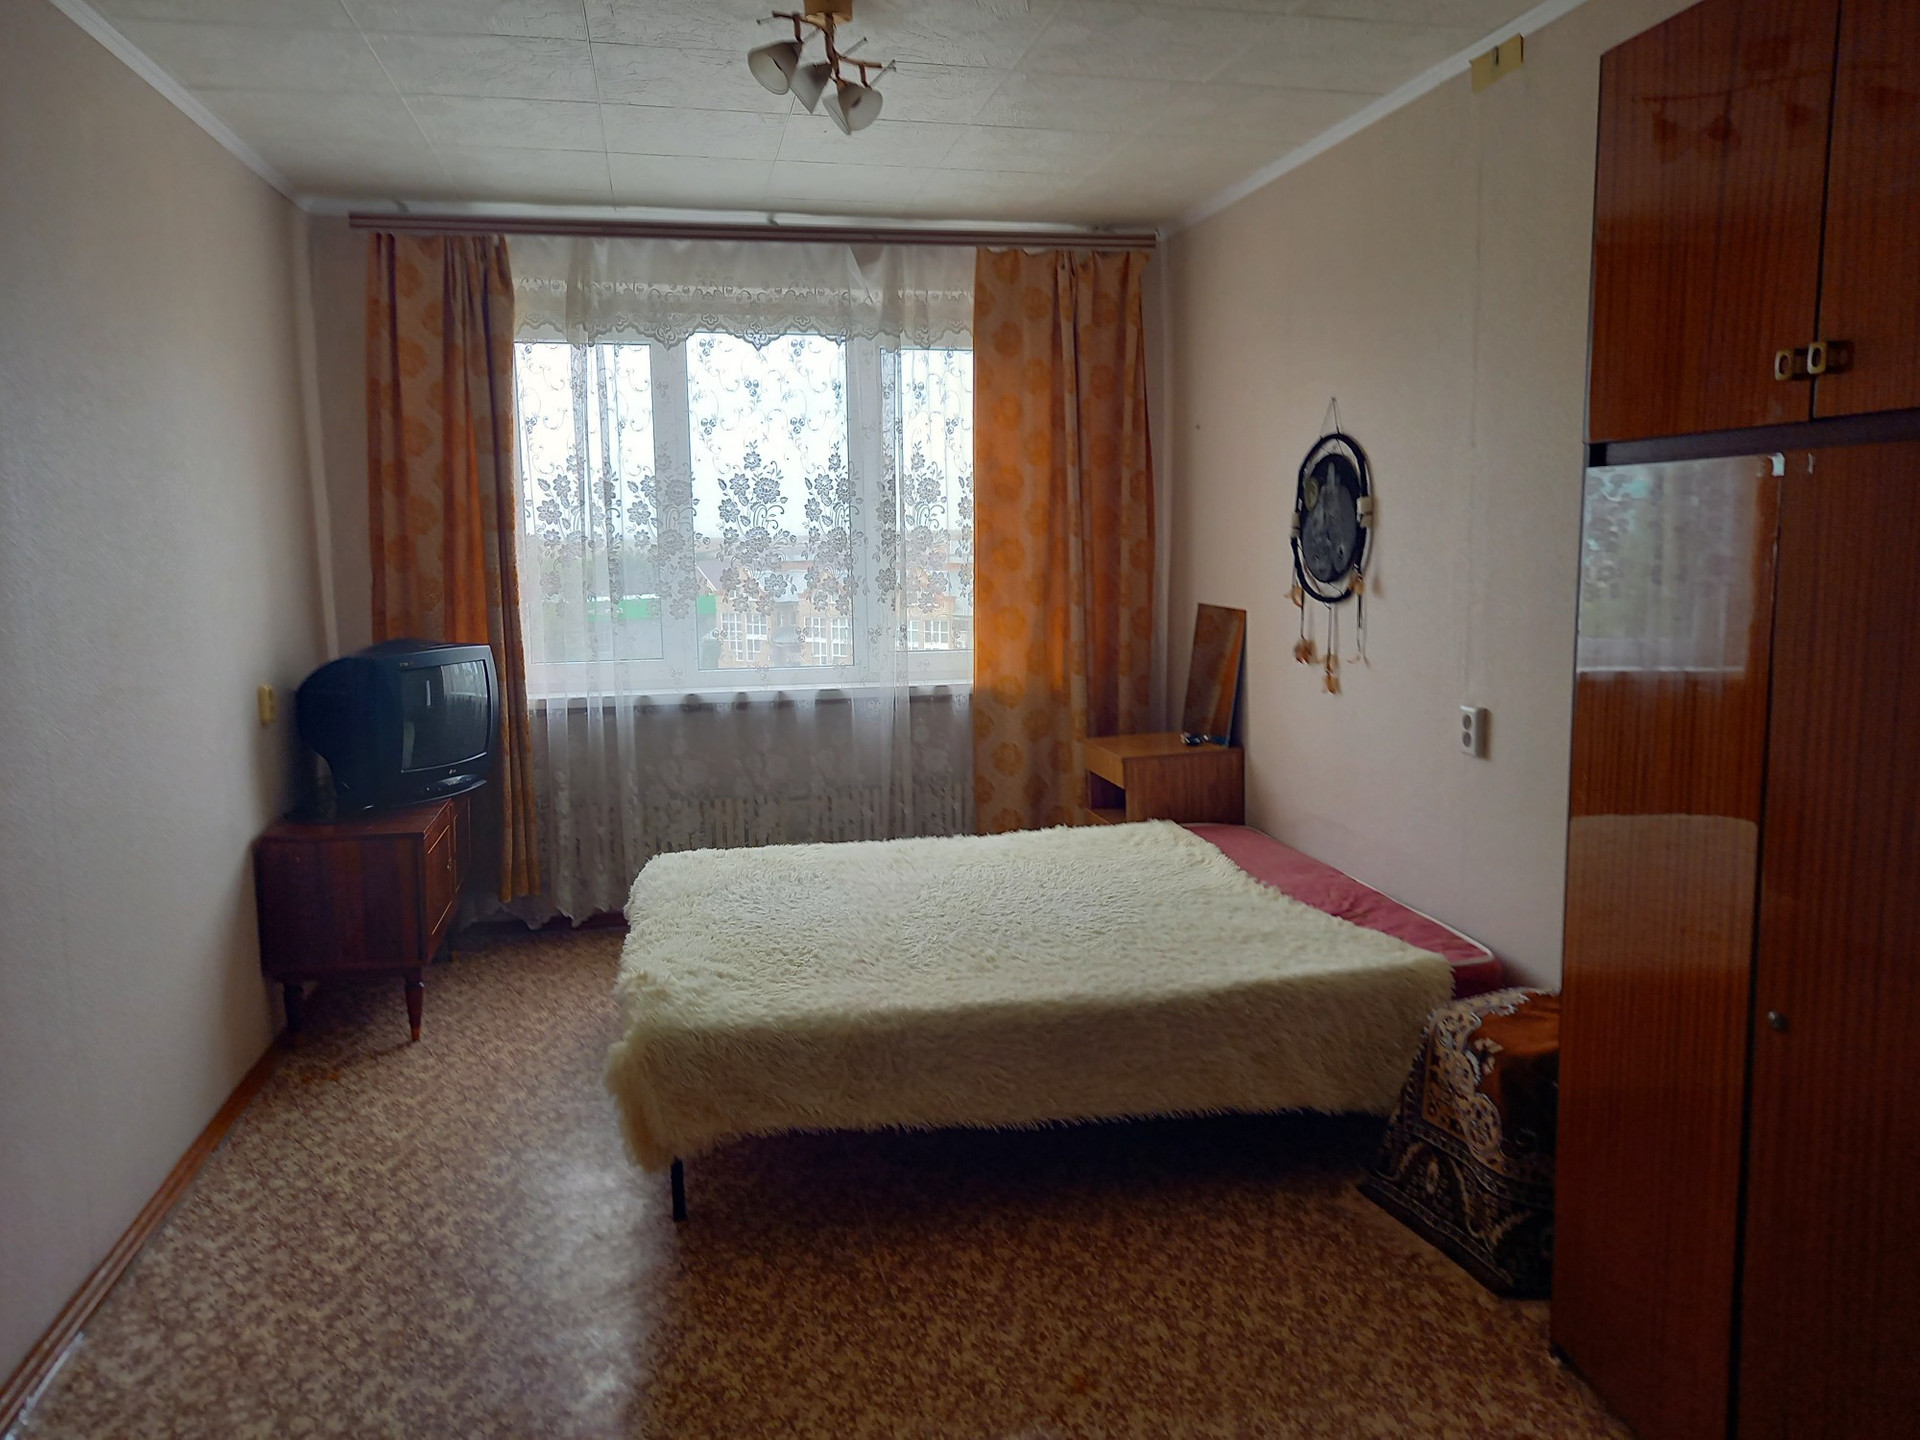 Купить комнату в оренбурге недорого